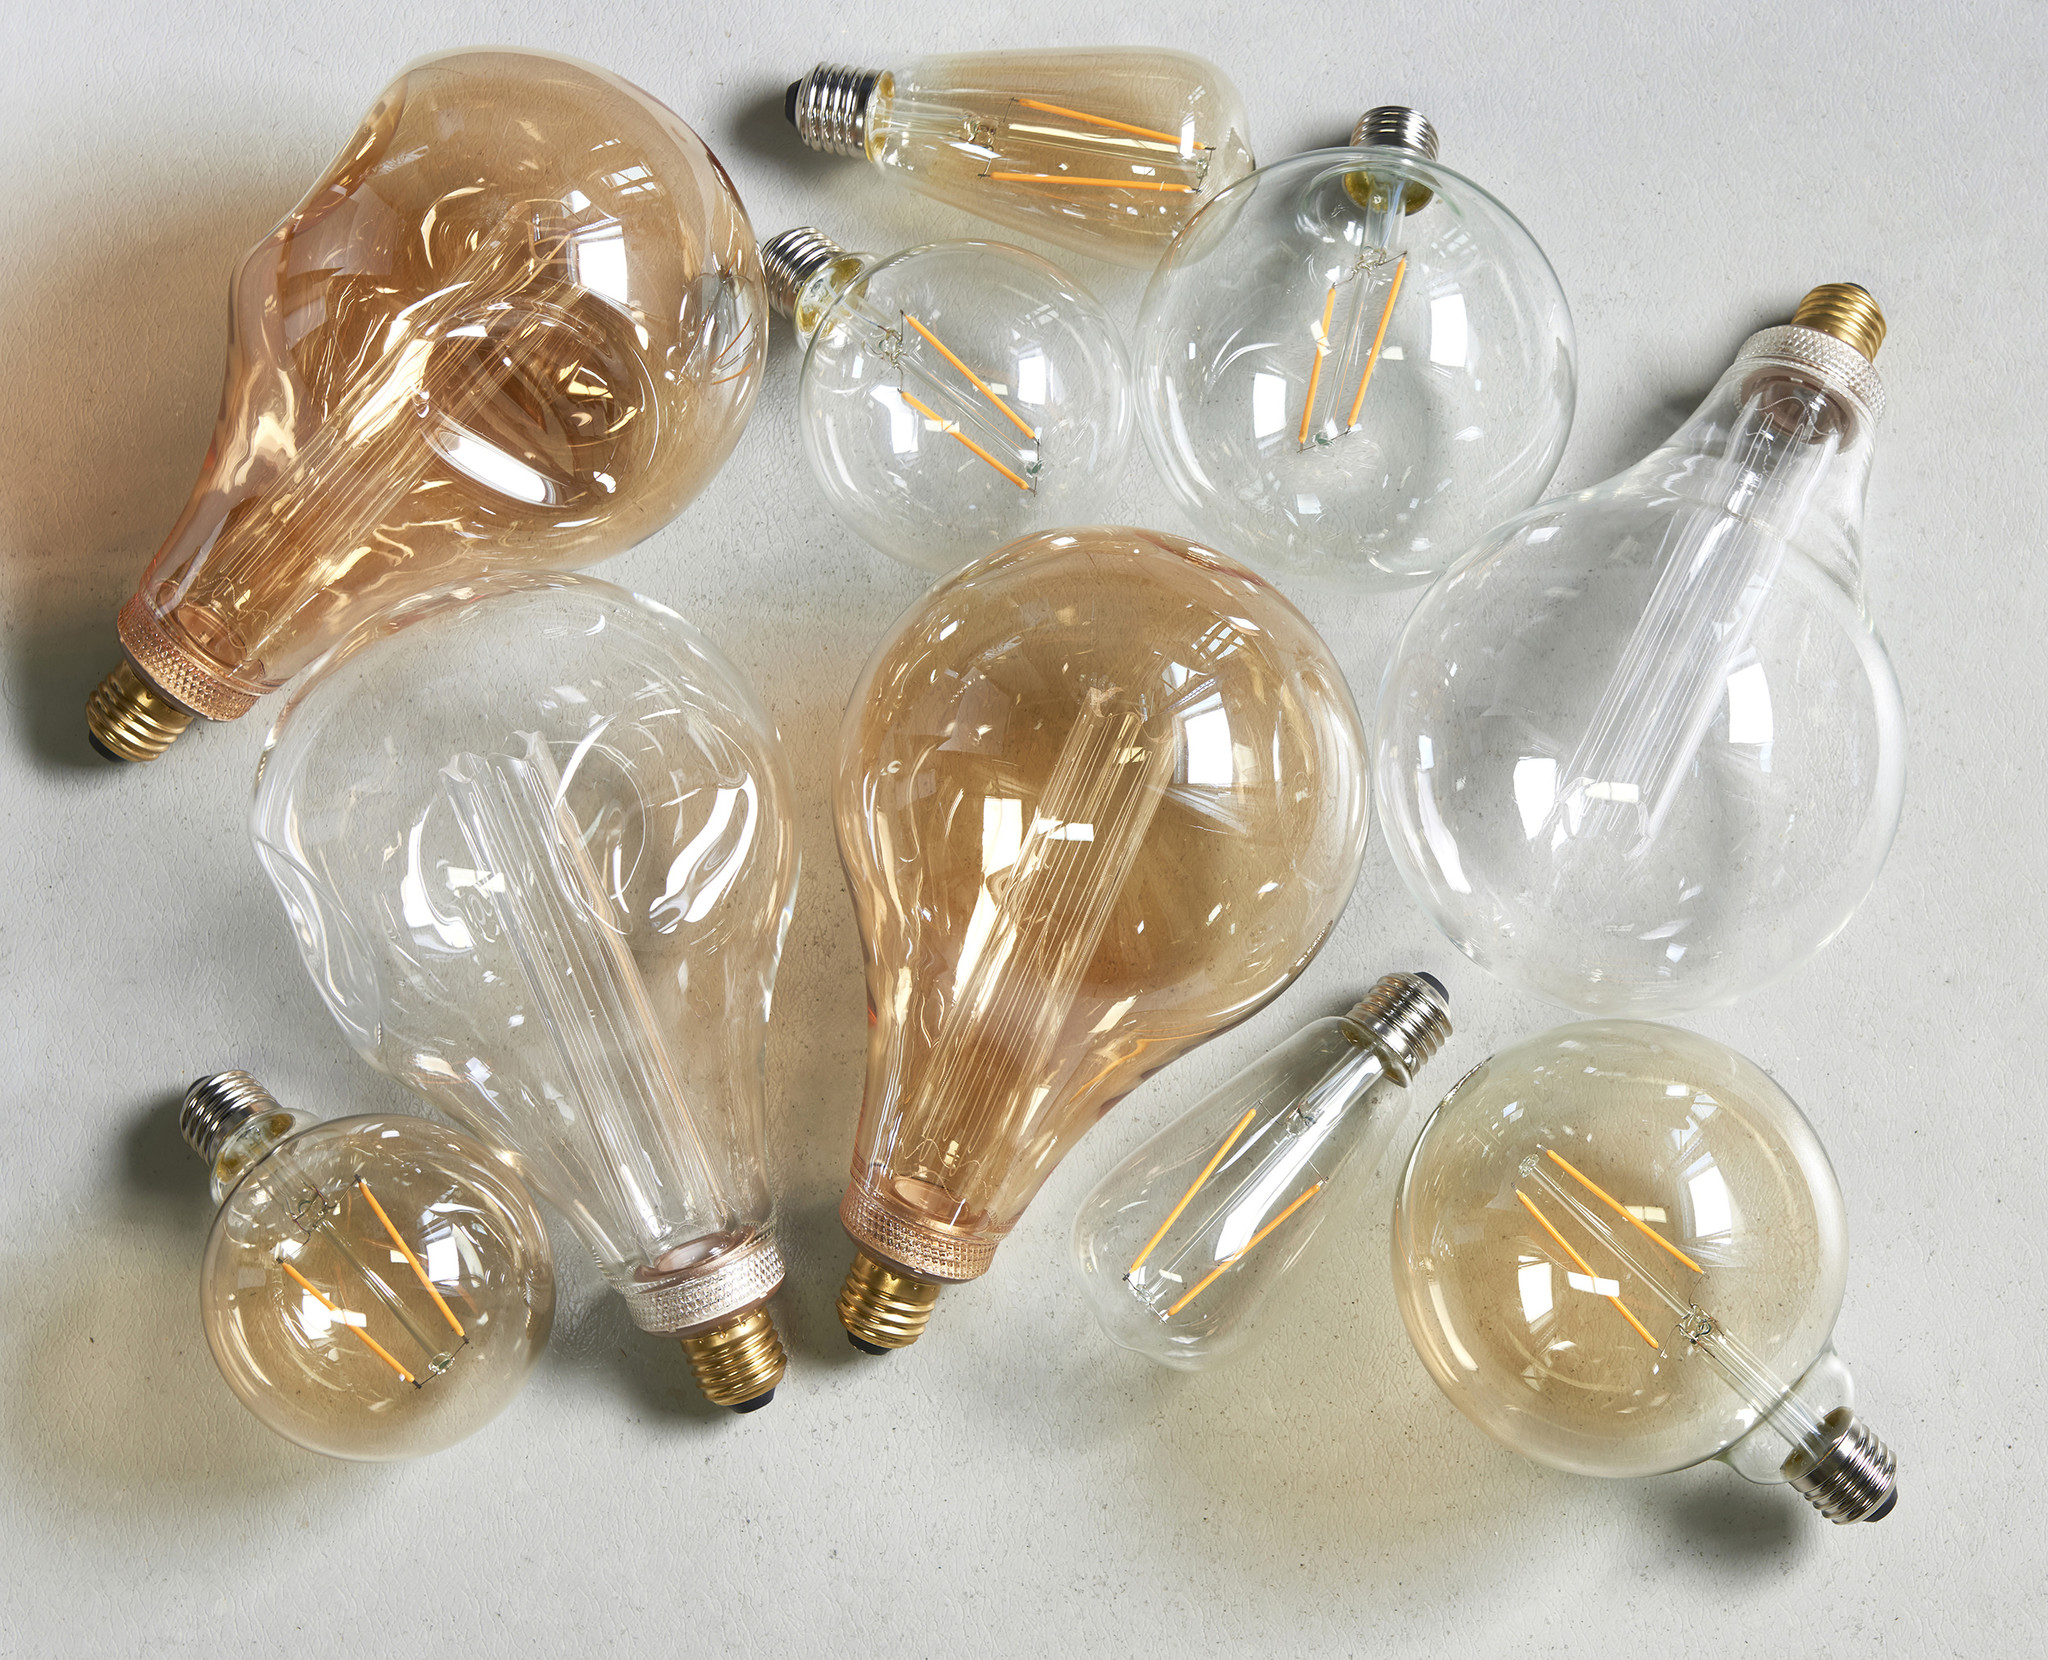 Why choose LED bulbs